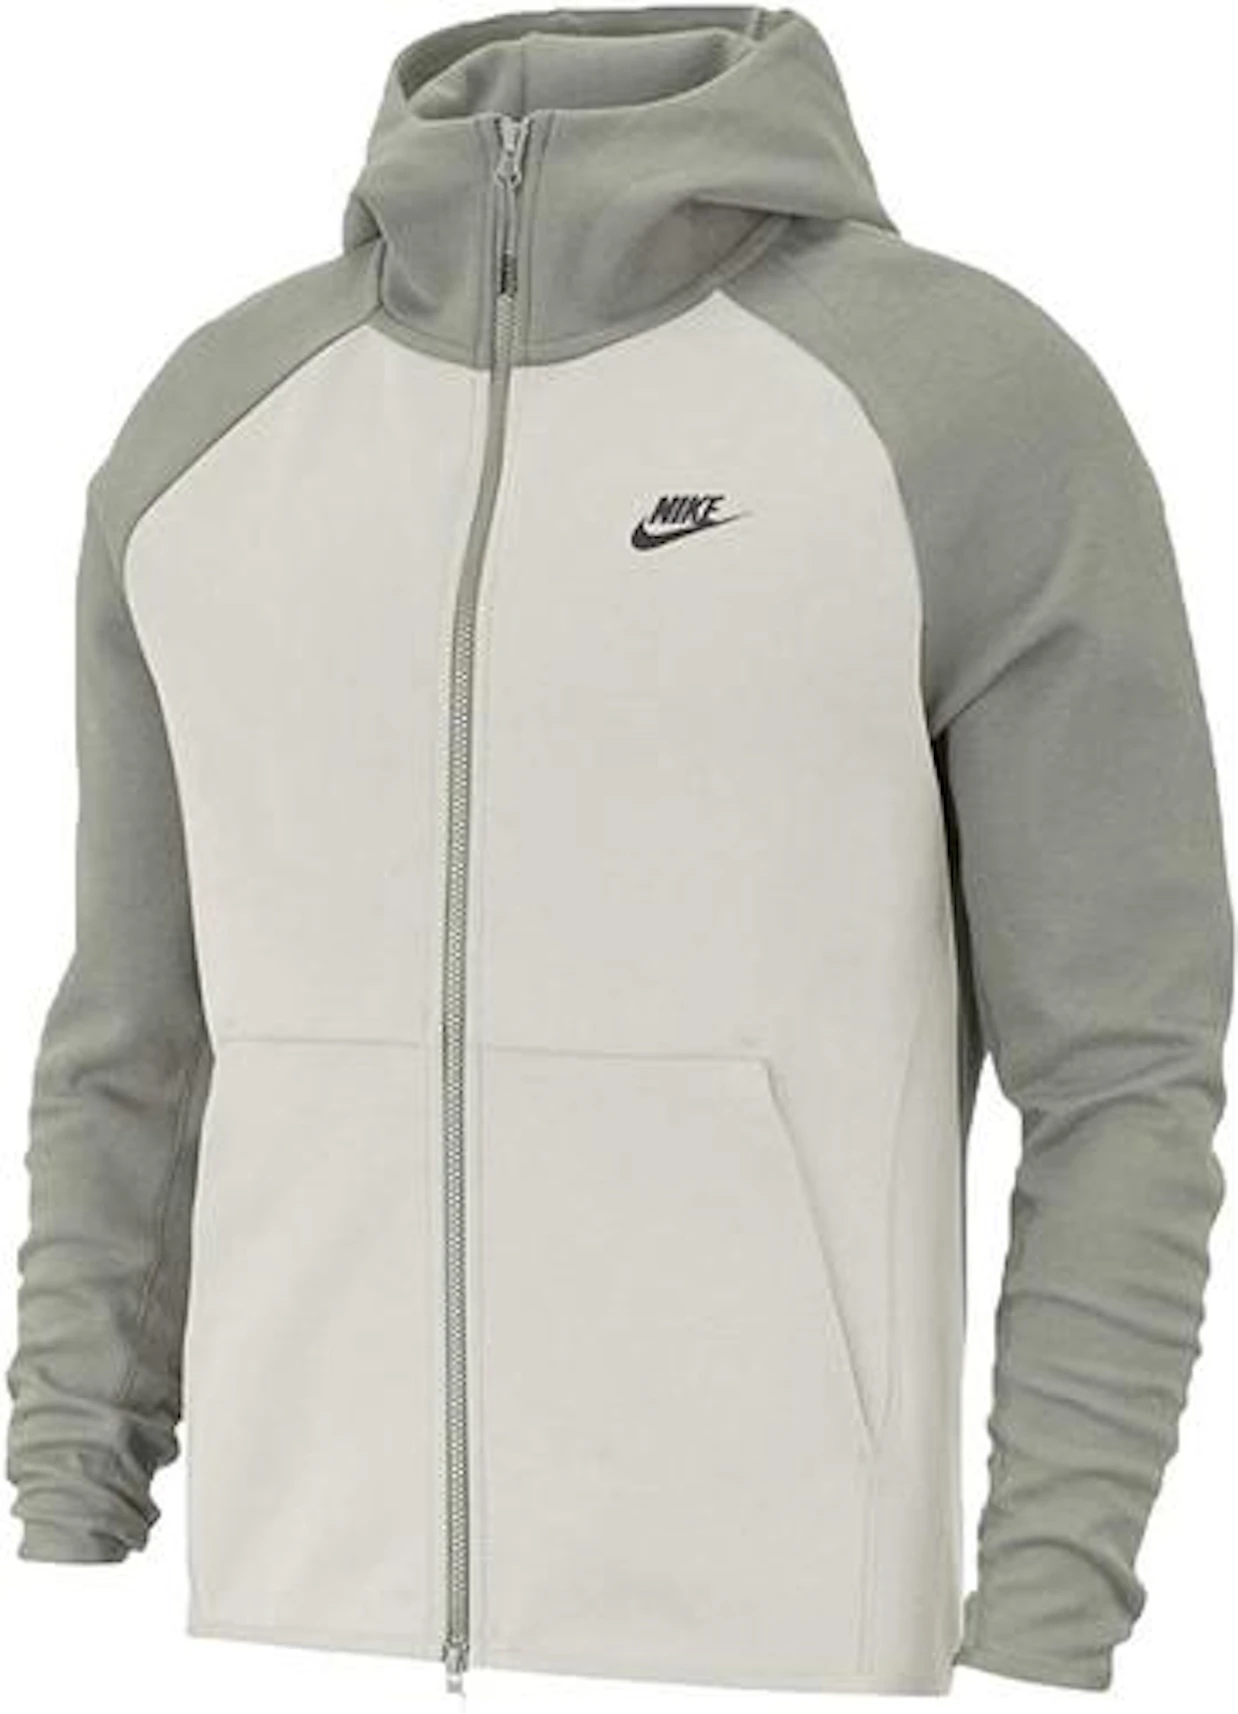 Nike Sportswear Tech Hoodie Light - US